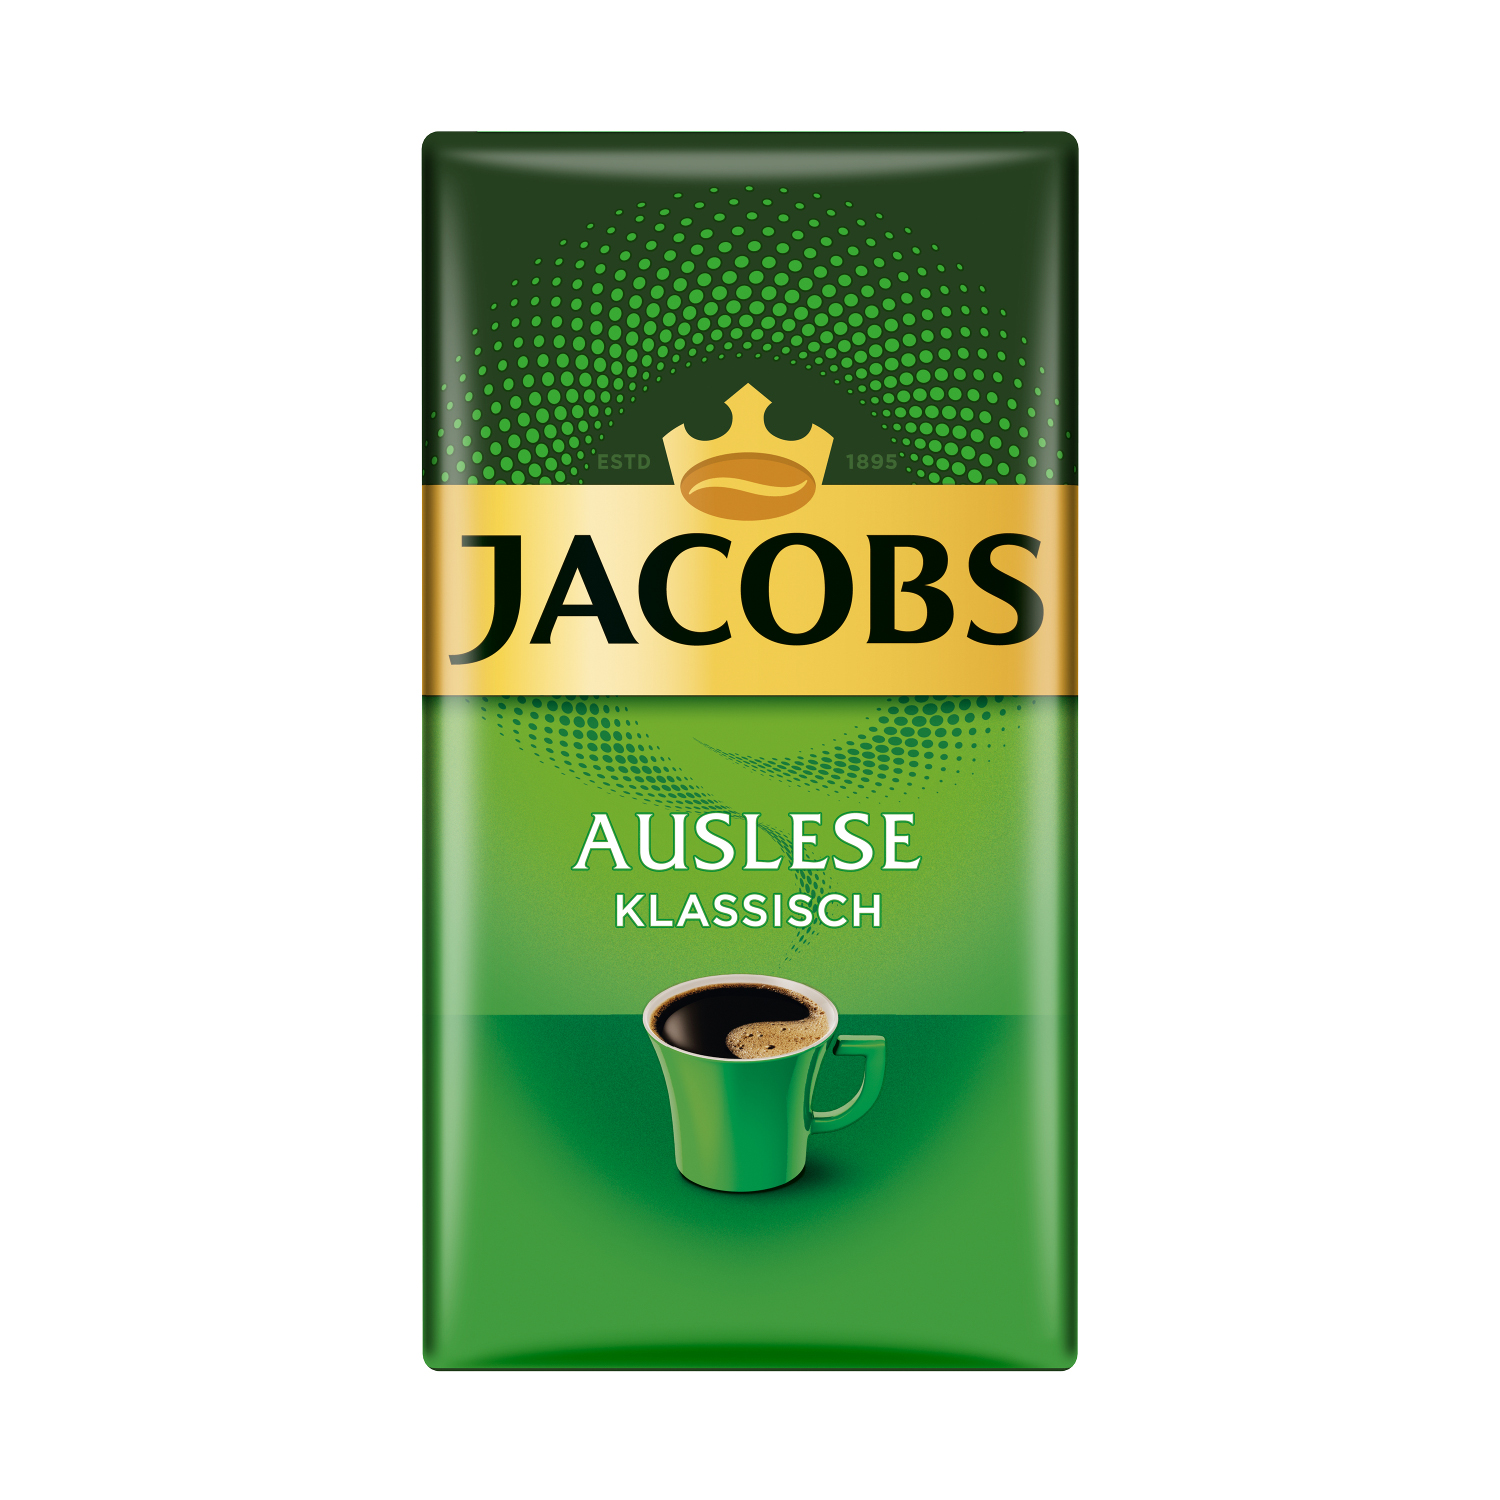 JACOBS Auslese 1 8 Klassisch Dose + 1 500g Filterkaffee French Press) (Filtermaschinen, + x Becher